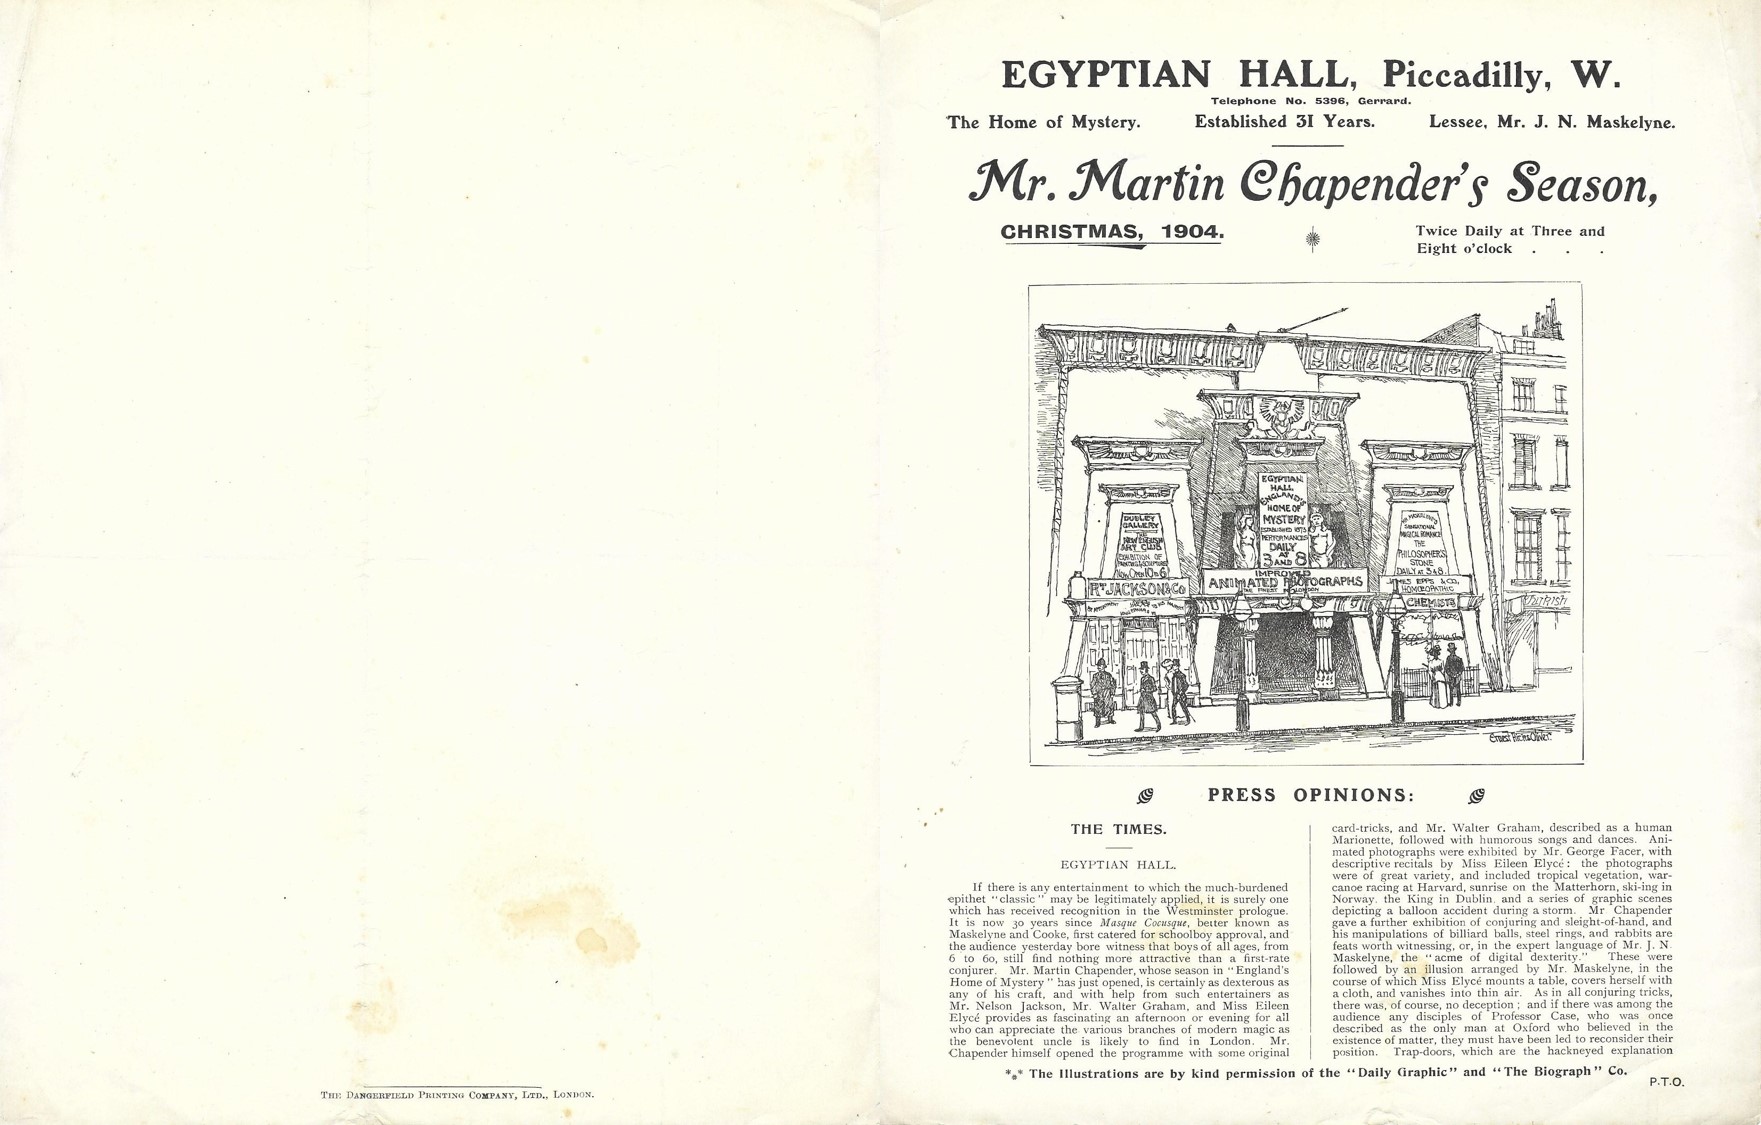 Press opinions on Mr. Martin Chapender’s season at the Egyptian Hall, Christmas 1904